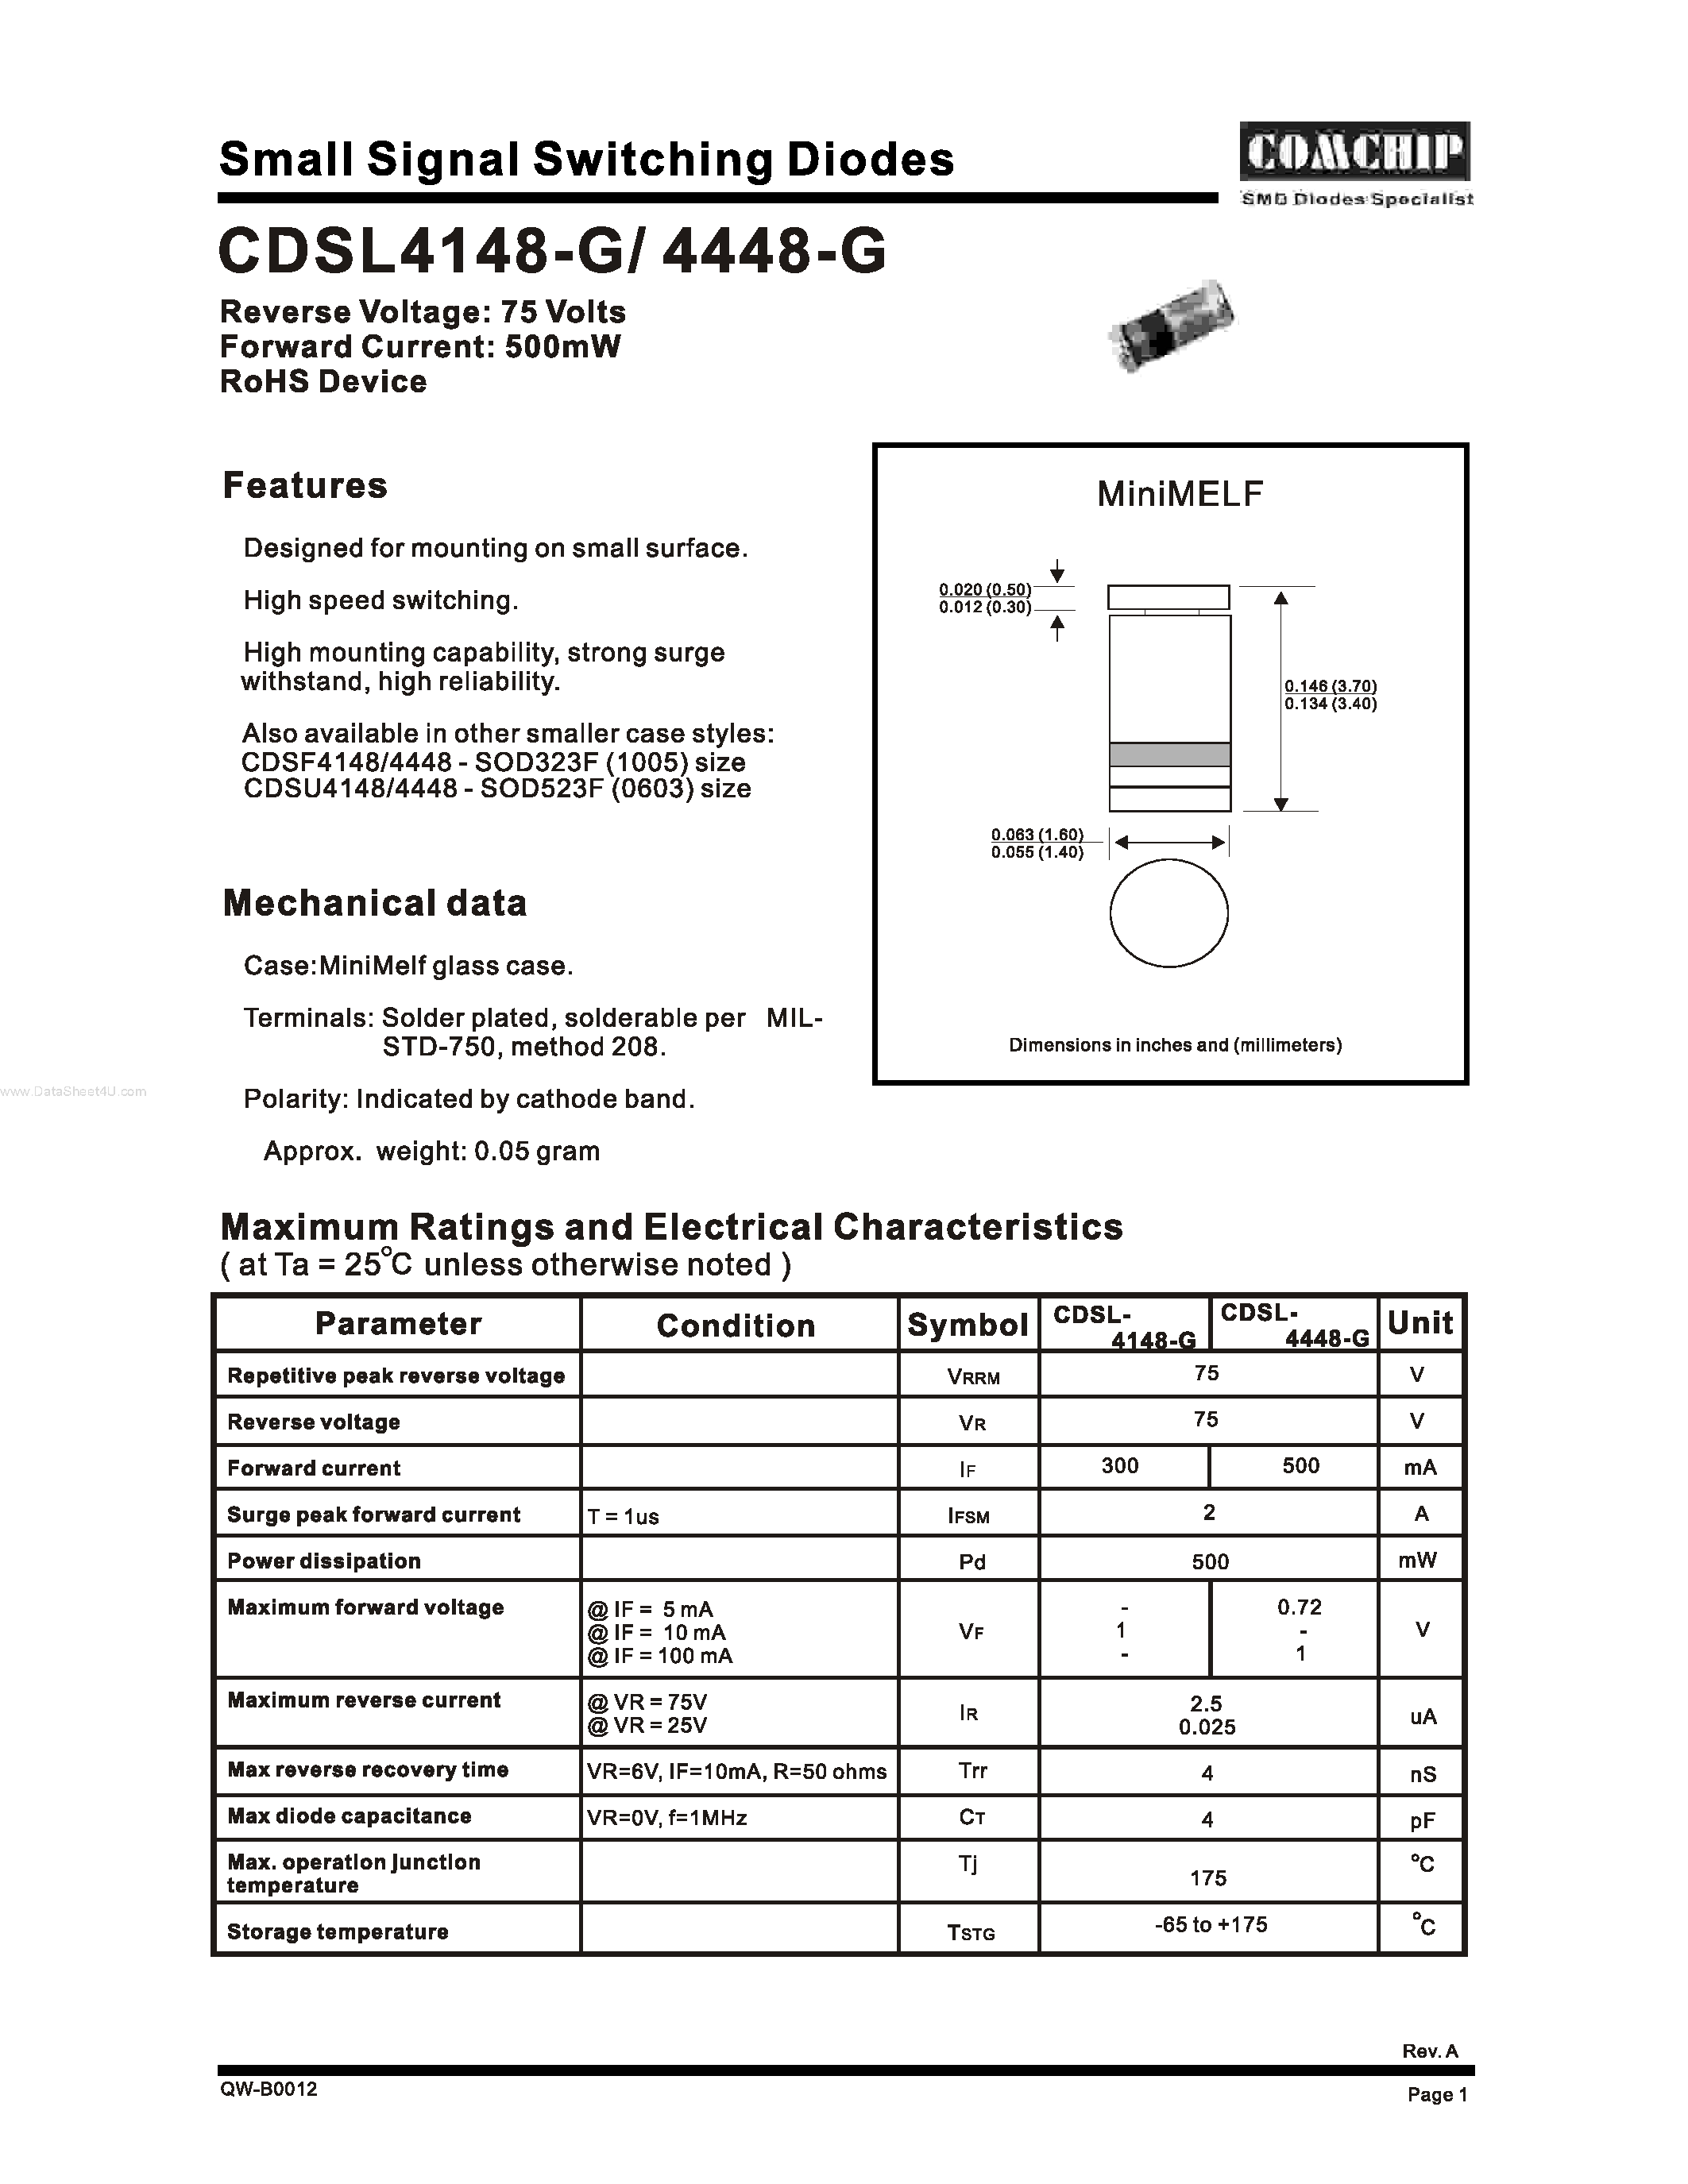 Datasheet CDSL4148-G - (CDSL4148-G / CDSL4448-G) Small-Signal Switching Diode page 1